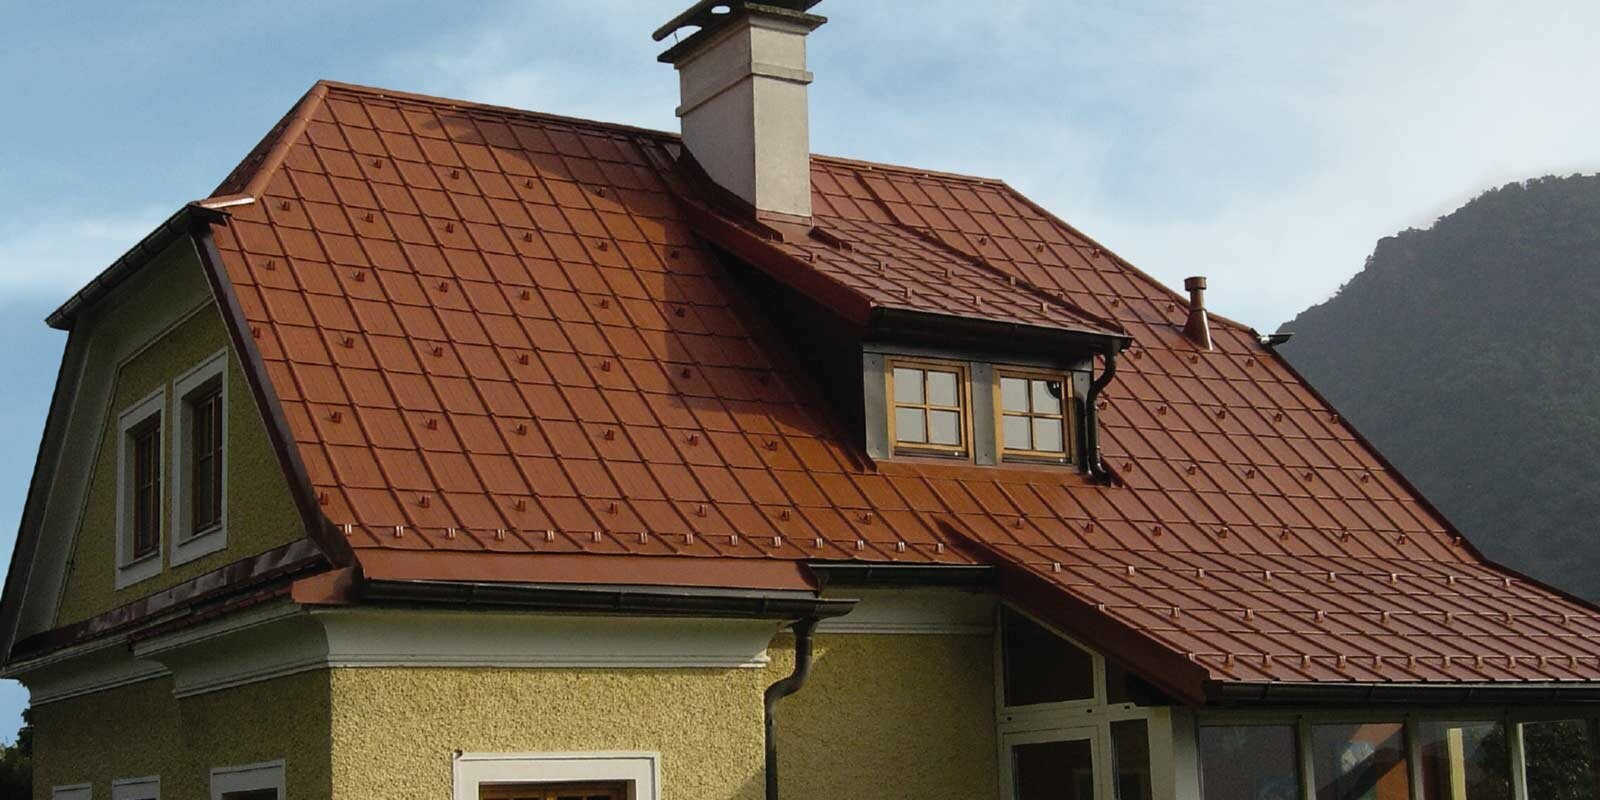 Casa monofamiliare con tetto a due spioventi con falda a timpano e abbaino con il nuovo tetto ristrutturato con tegole PREFA rosso cotto